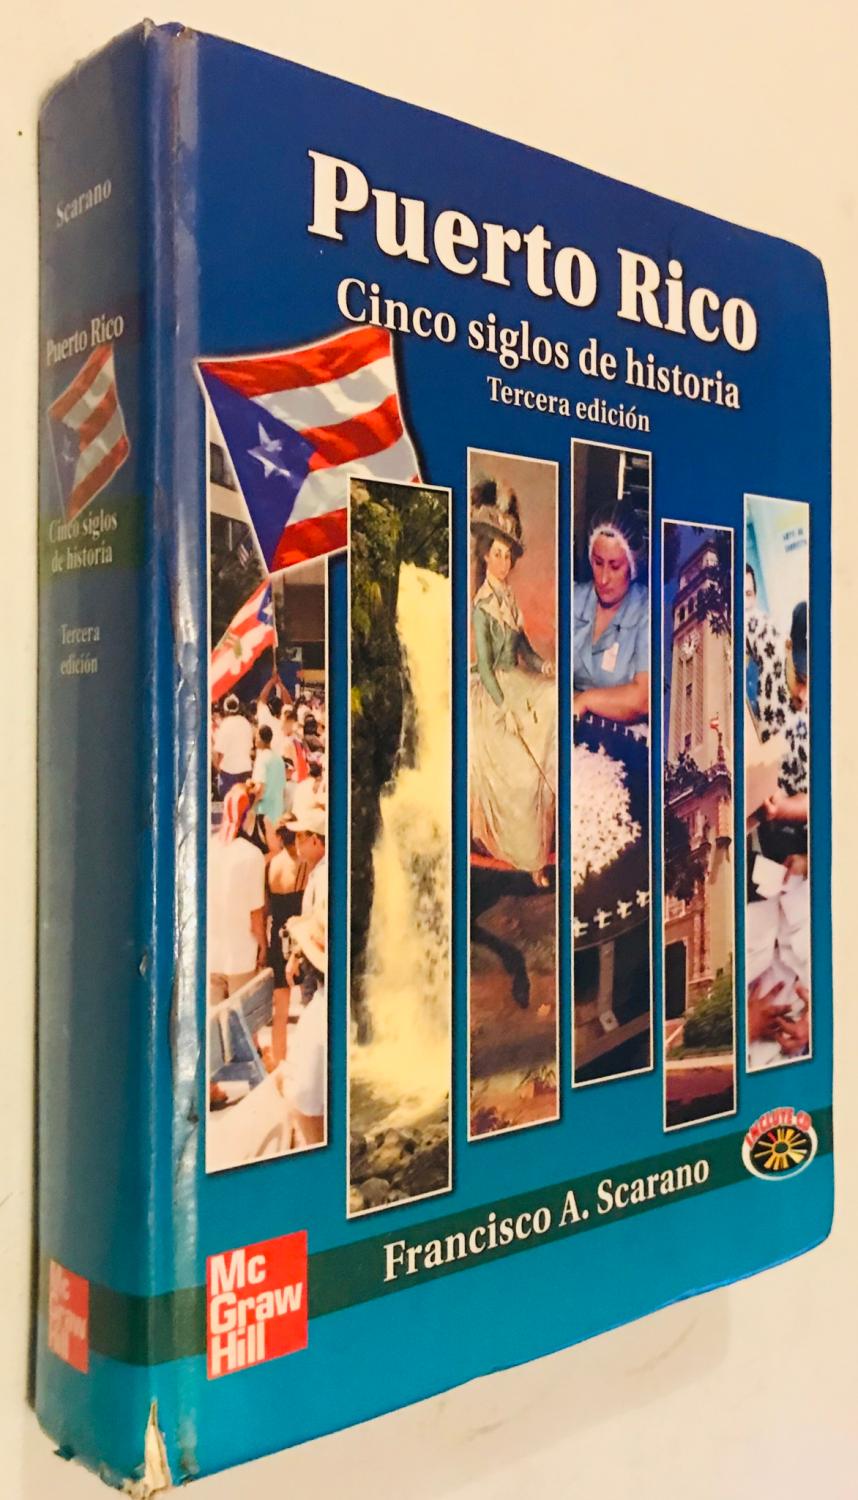 Puerto rico Cinco siglos de Historia tercera edicion by Francisco A. Scarano Very Good